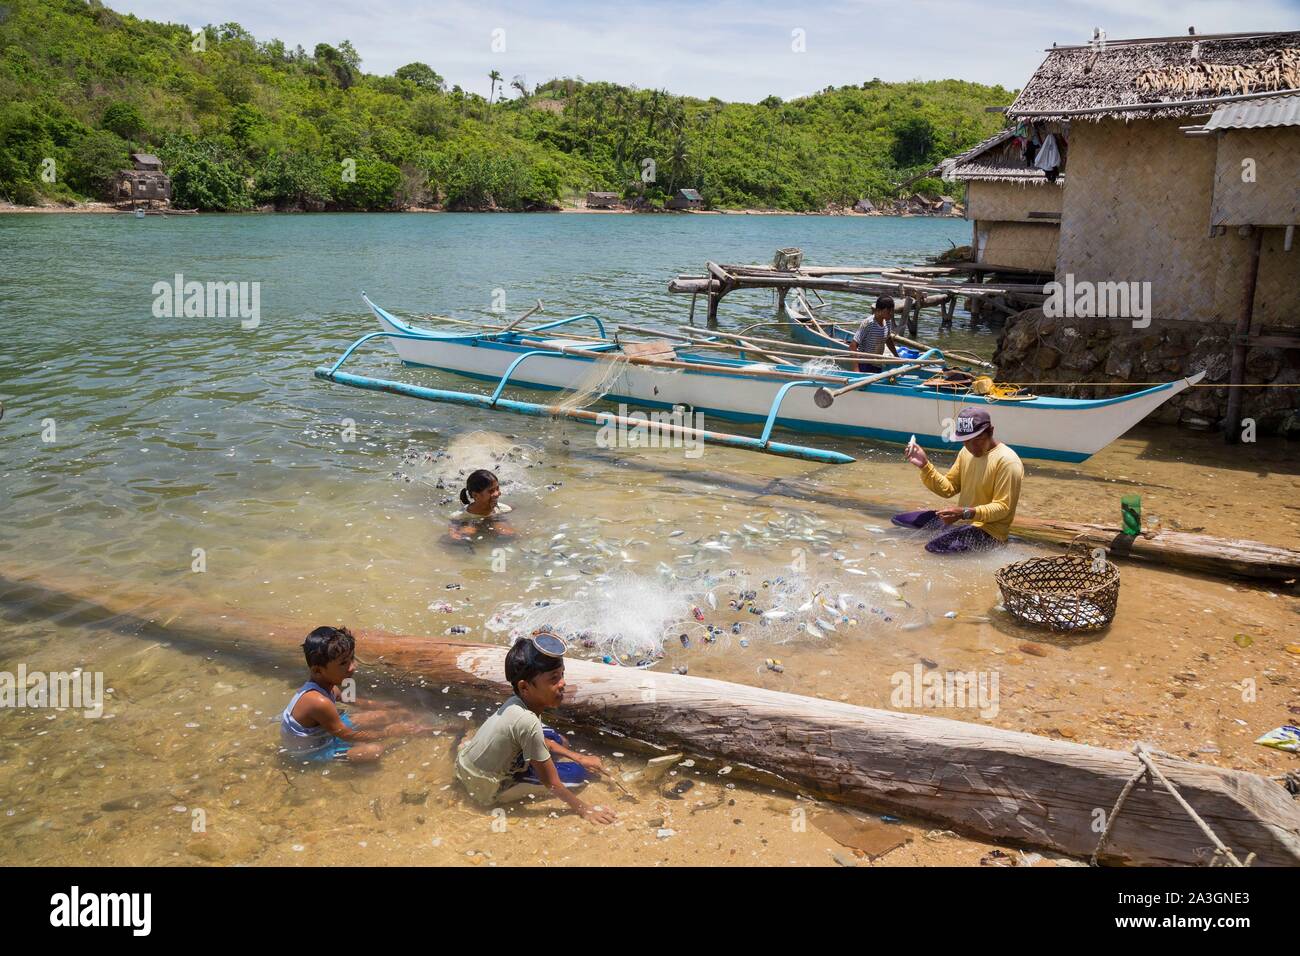 Philippines, Palawan, Malampaya Sound paysages terrestres et marins protégés, village de pêcheurs, sur une petite île au milieu du son Banque D'Images